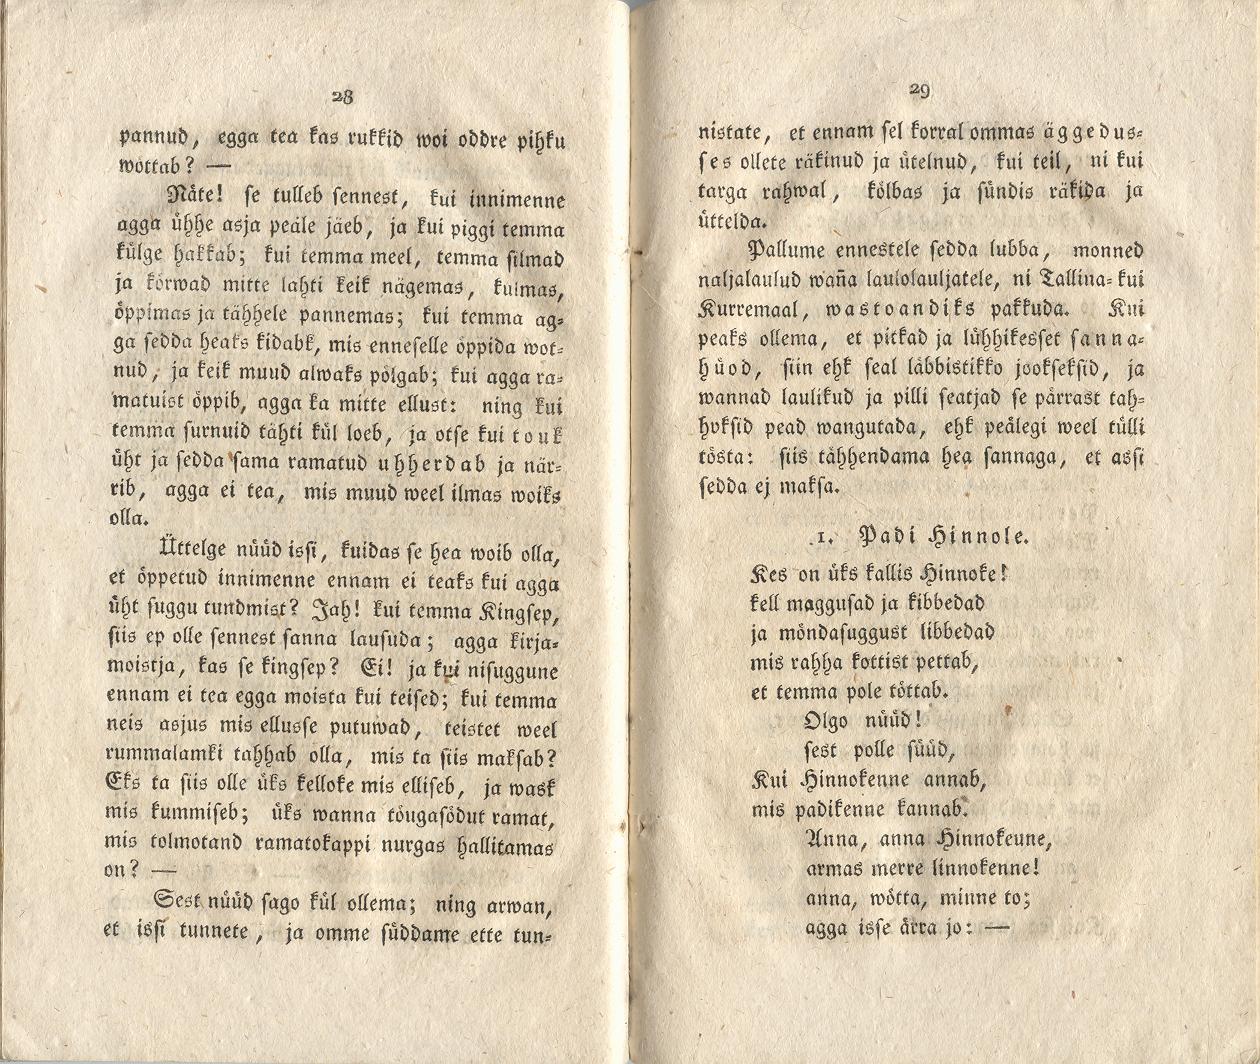 Ehstnische Originalblätter für Deutsche (1816) | 21. (28-29) Основной текст